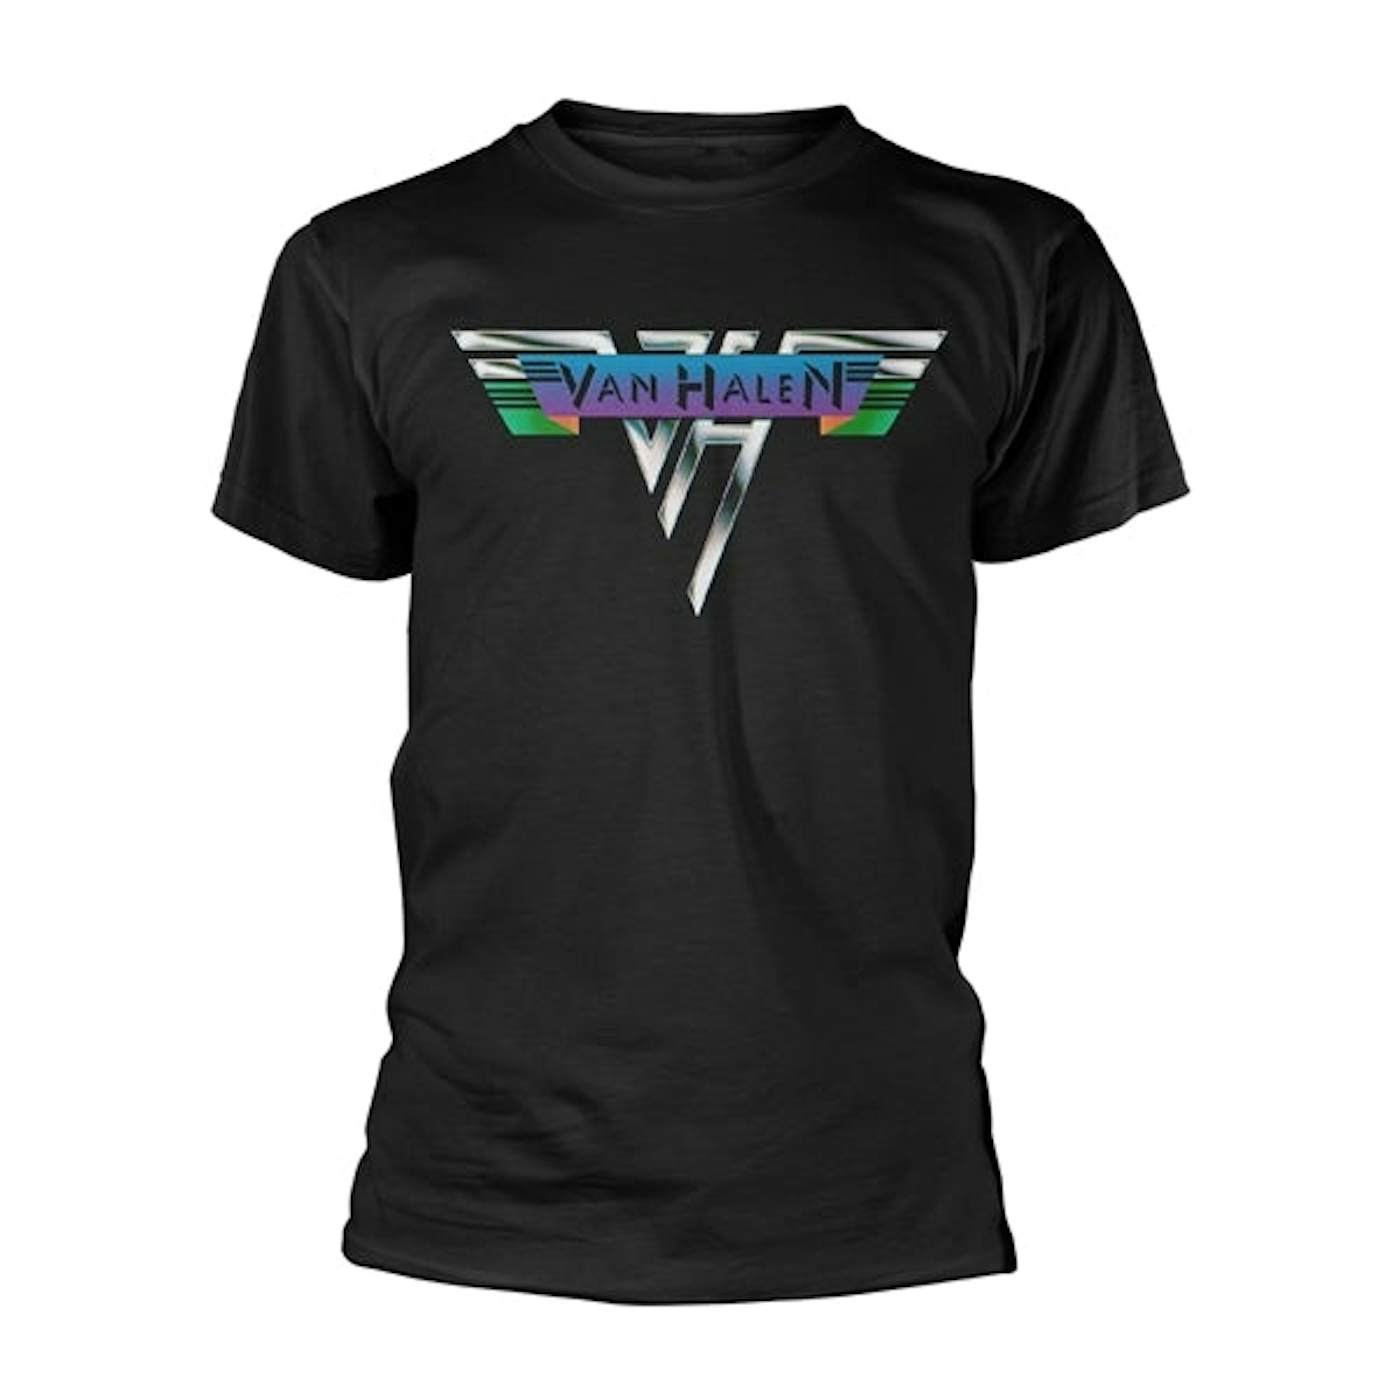 Van Halen T Shirt - Vintage 1978